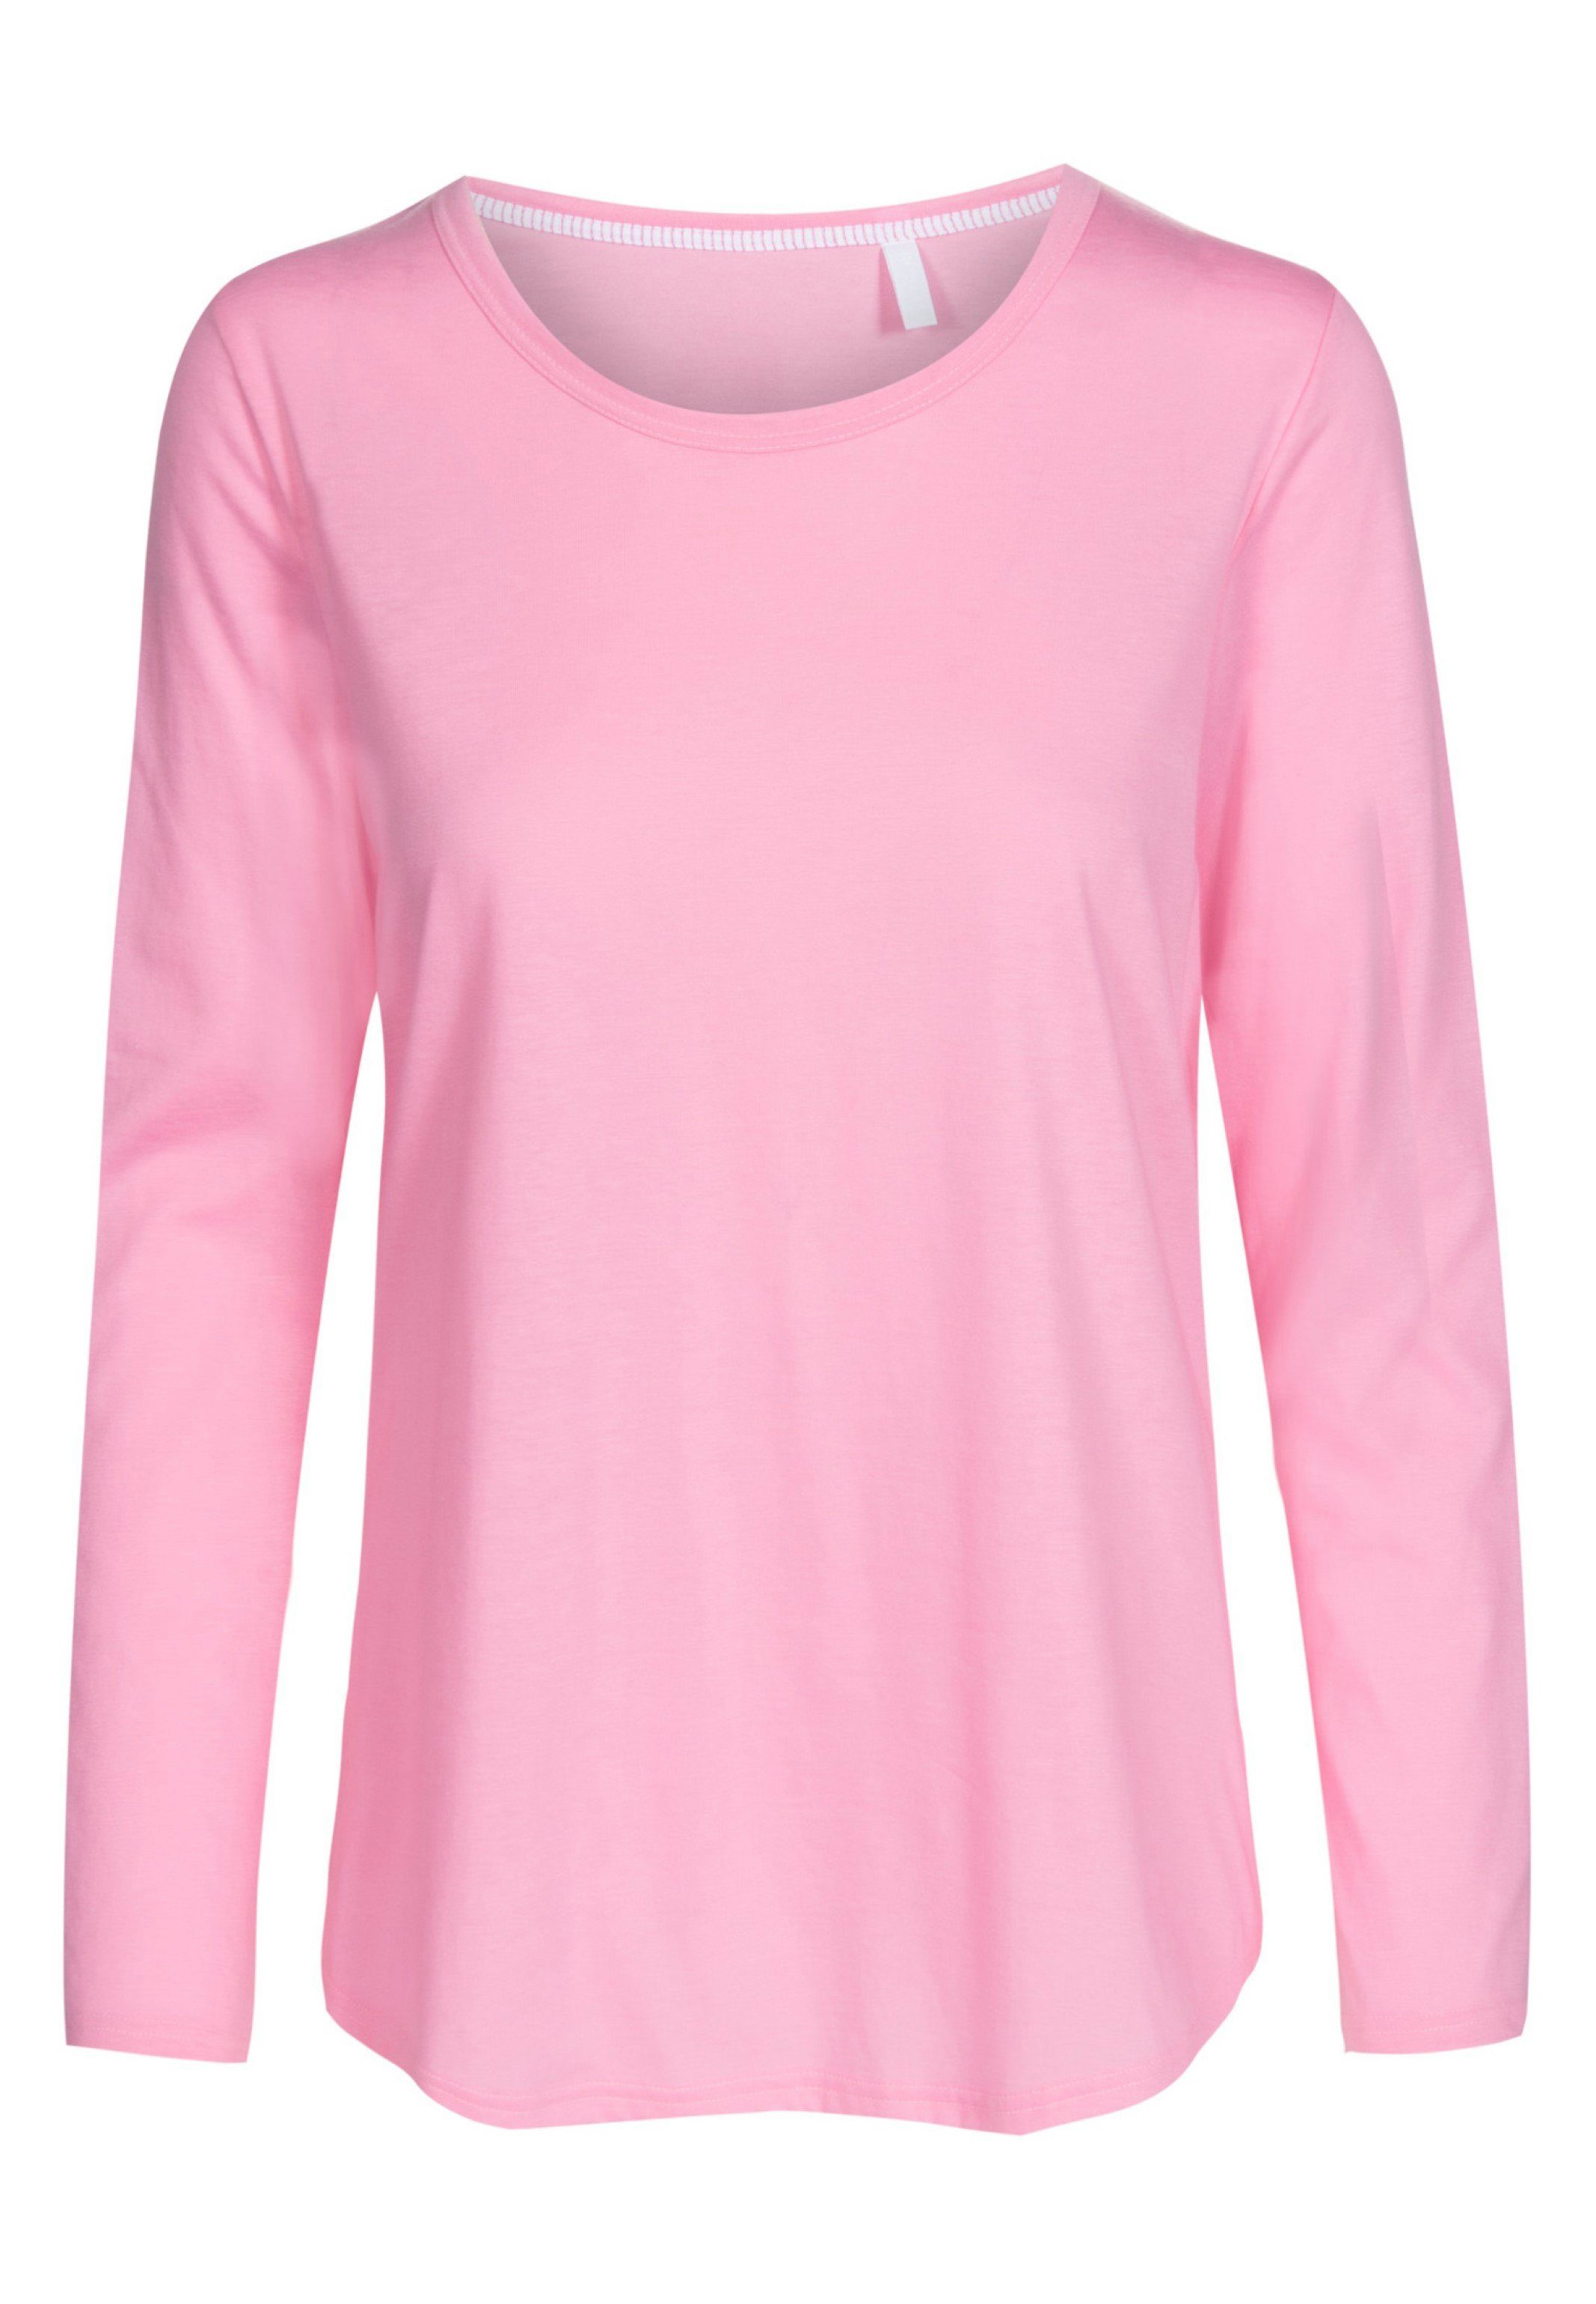 - Schlafanzug Aurora (1-tlg) Pyjamaoberteil - Shirt Hochwertig Baumwolle Rösch Pink verarbeitet Basic langarm